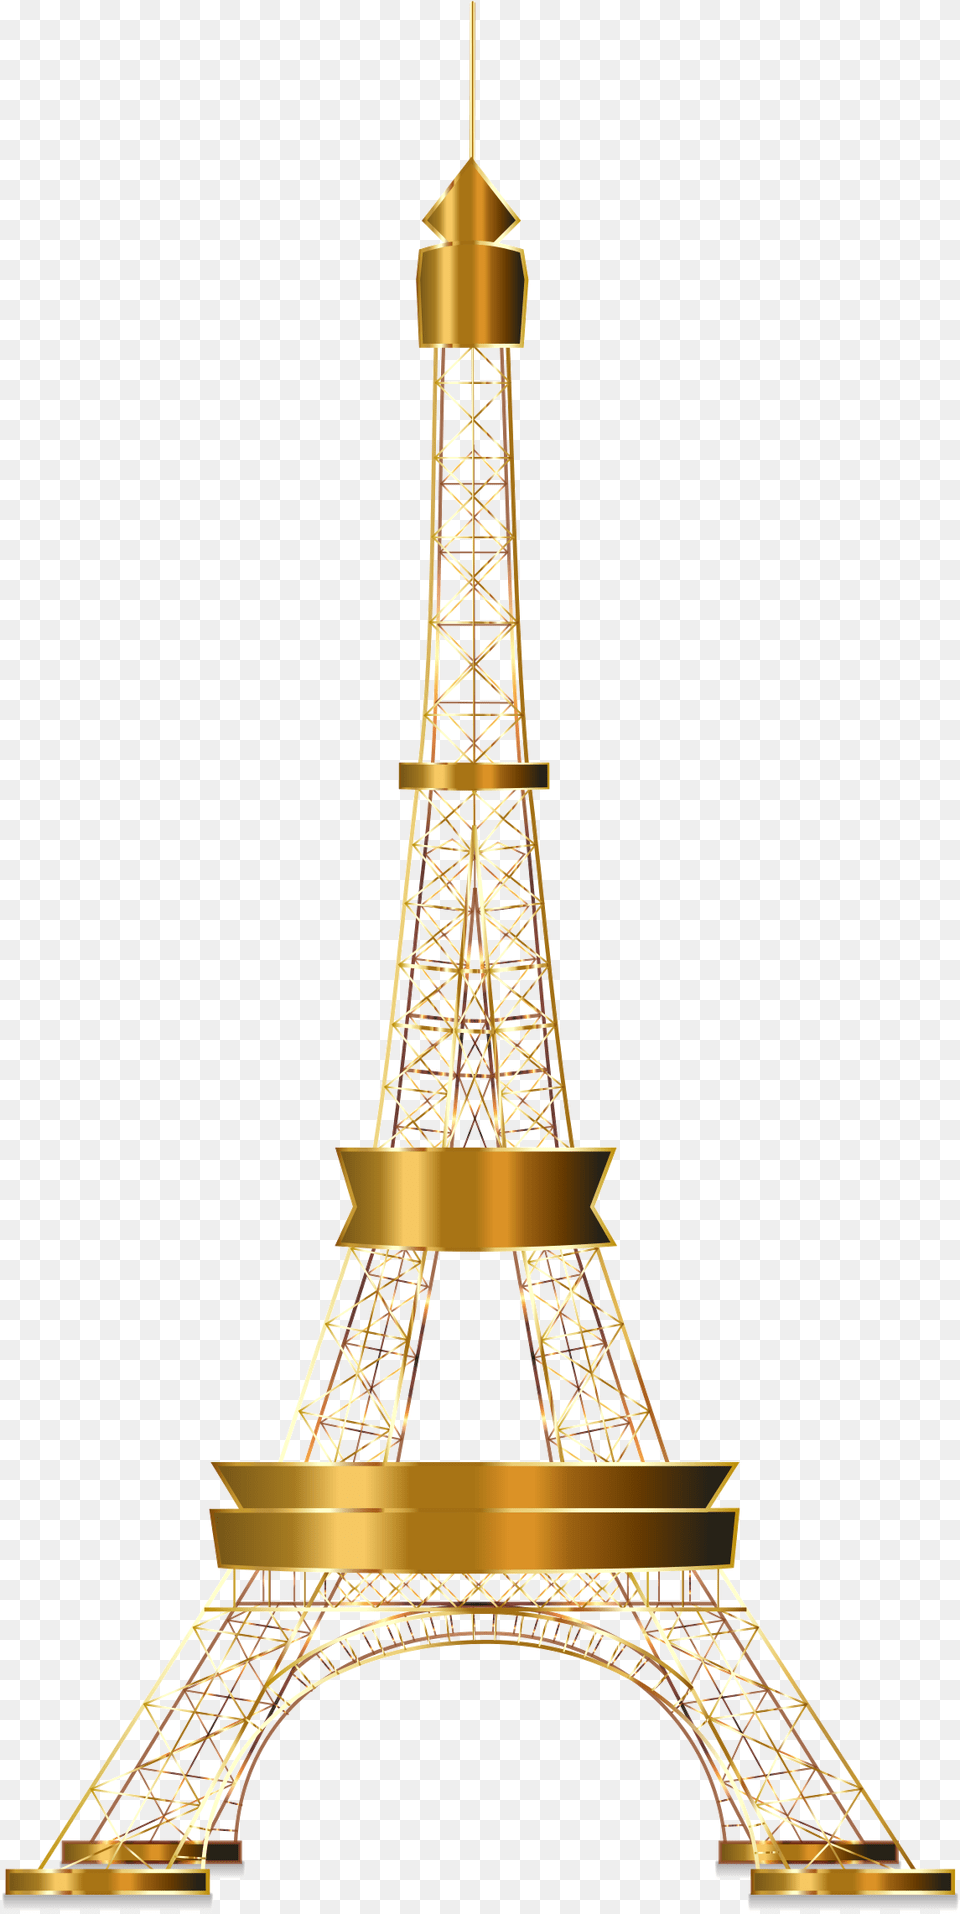 Eiffel Tower Transparent Images 27 Transparent Gold Eiffel Tower, Architecture, Building Png